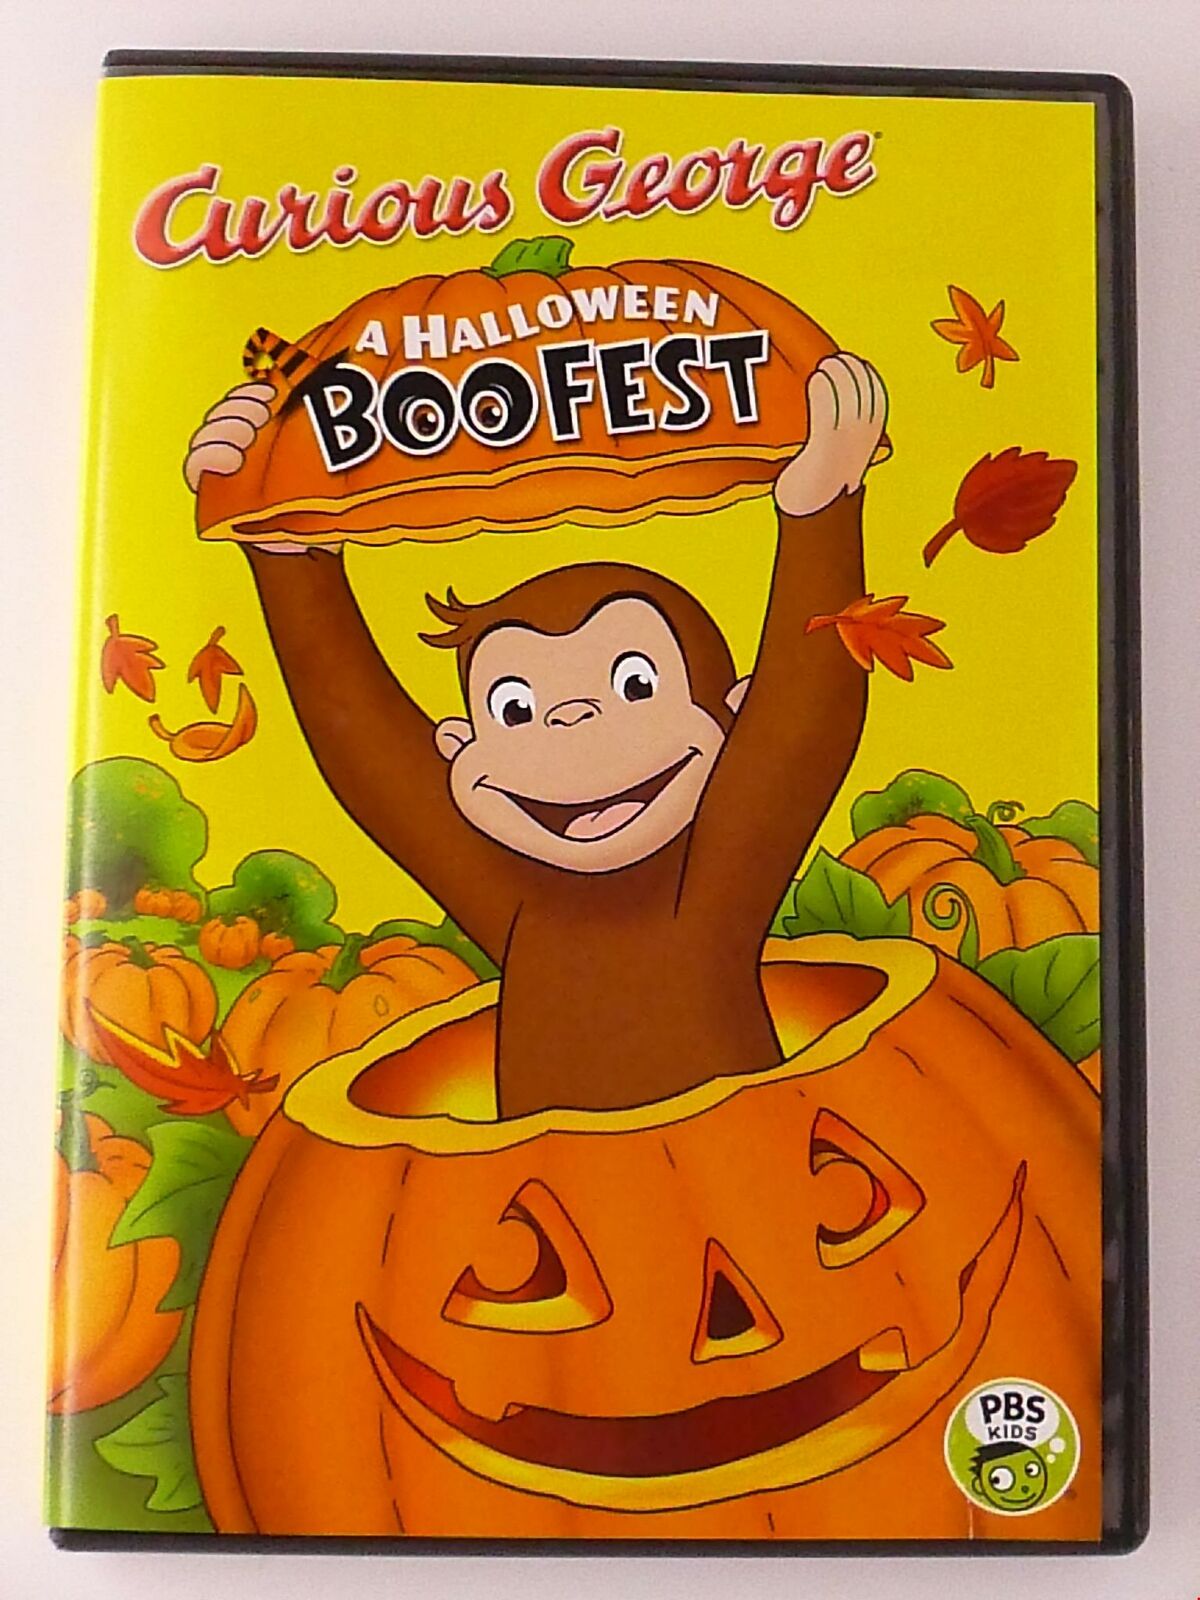 Curious George - A Halloween Boofest (DVD, PBS) - H0516